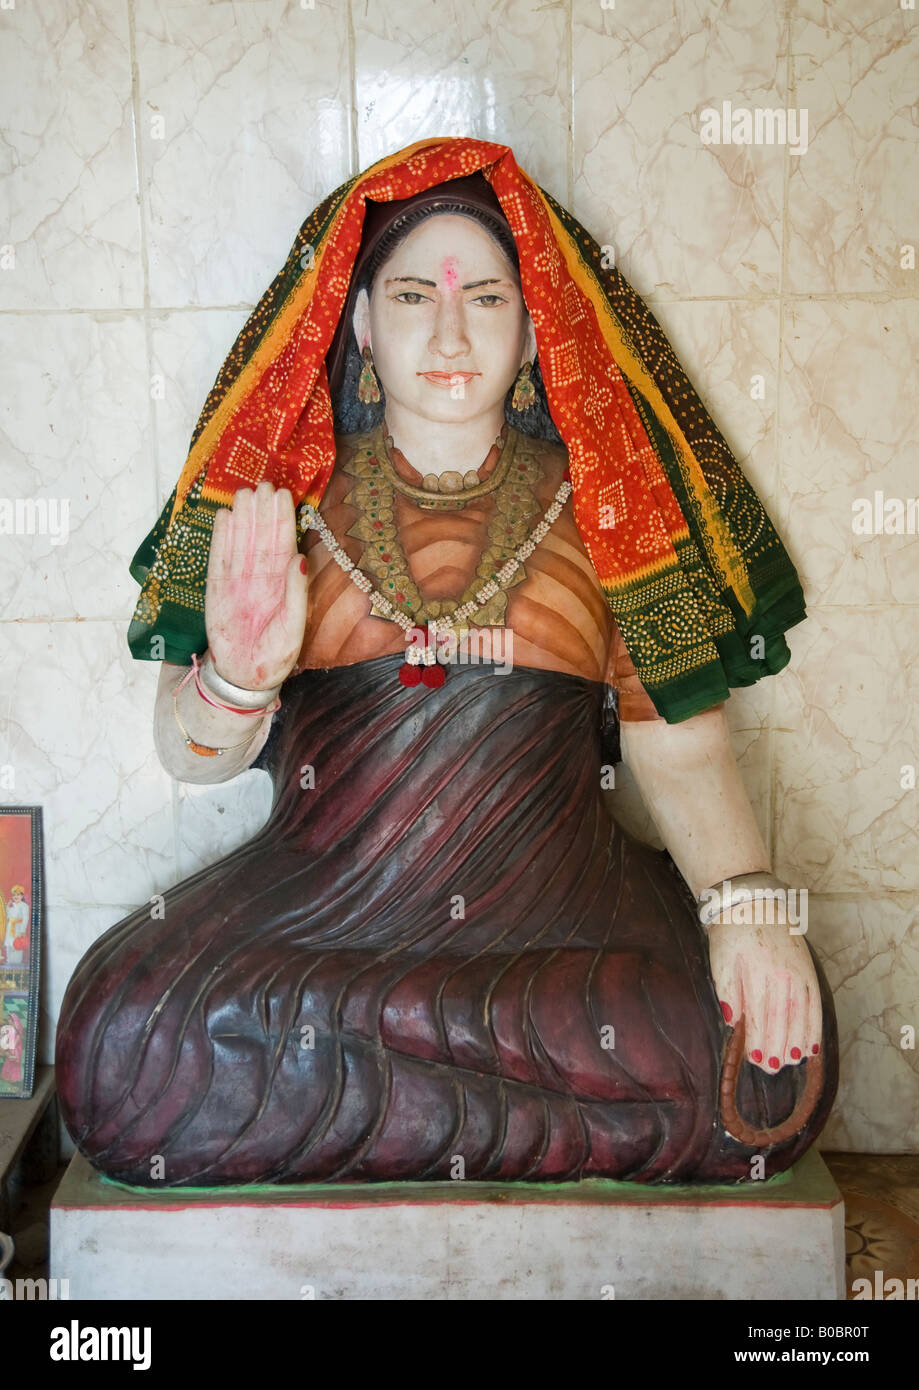 Temple d'Lakhiaai Markhibhai Sainte Mère de Matka Charan dans la communauté hindoue Dwarka, ayant vécu de 15.05.1928 à 30.07.2004. Banque D'Images